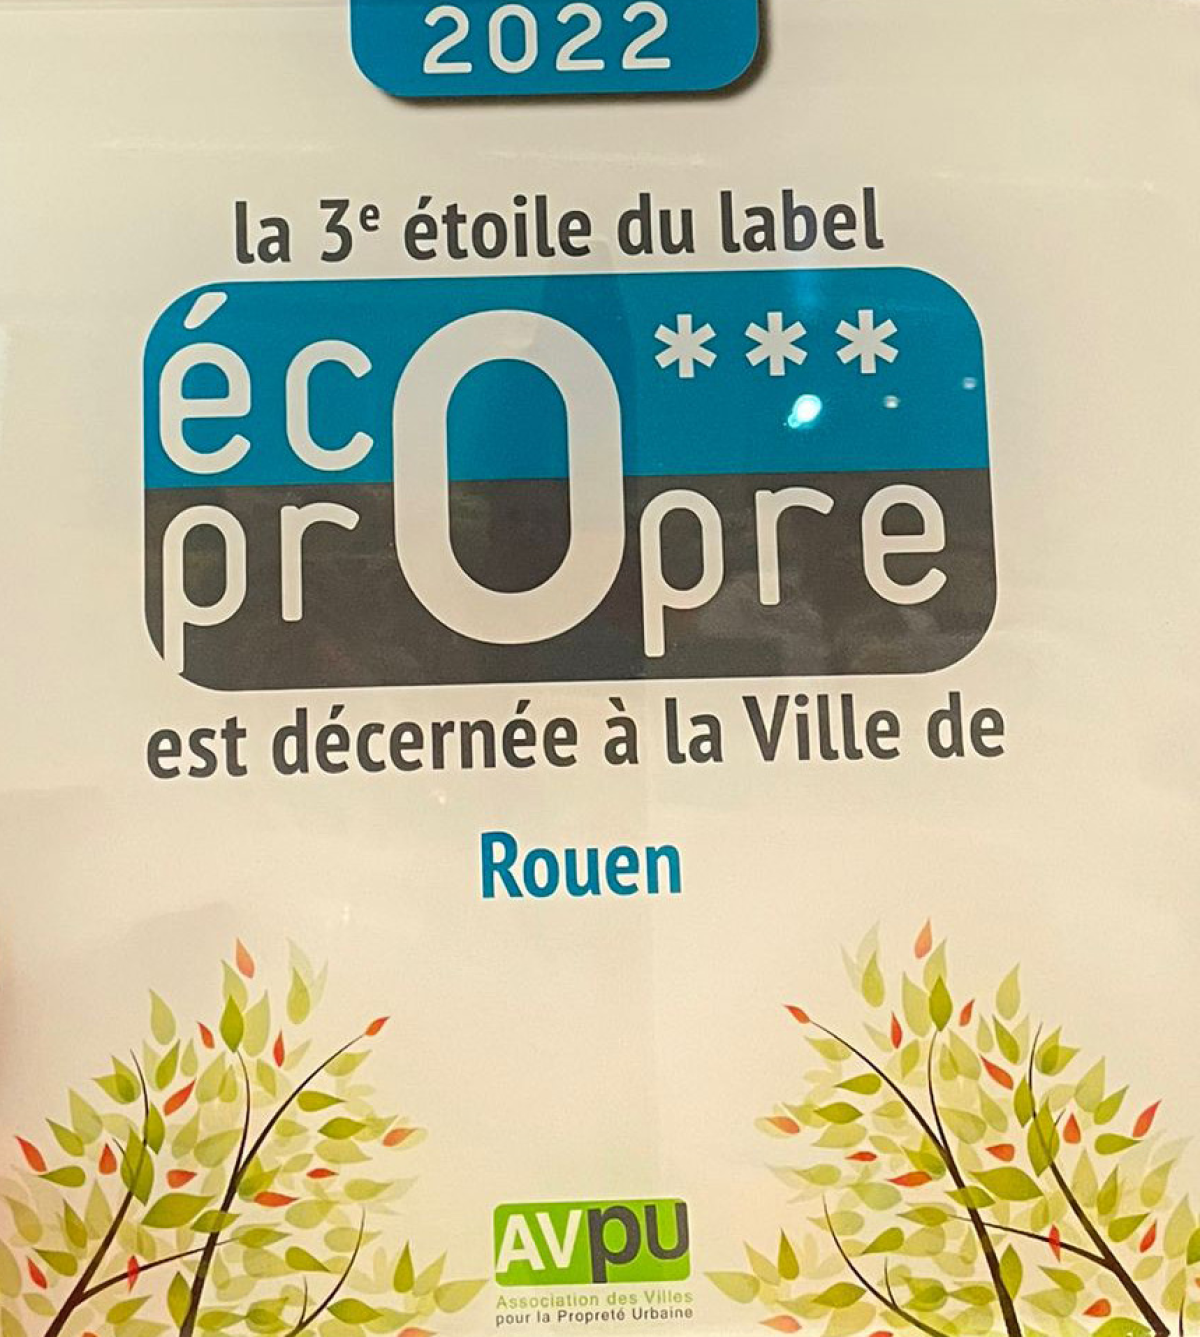 Rouen décroche la 3e étoile du label "Eco-propre"